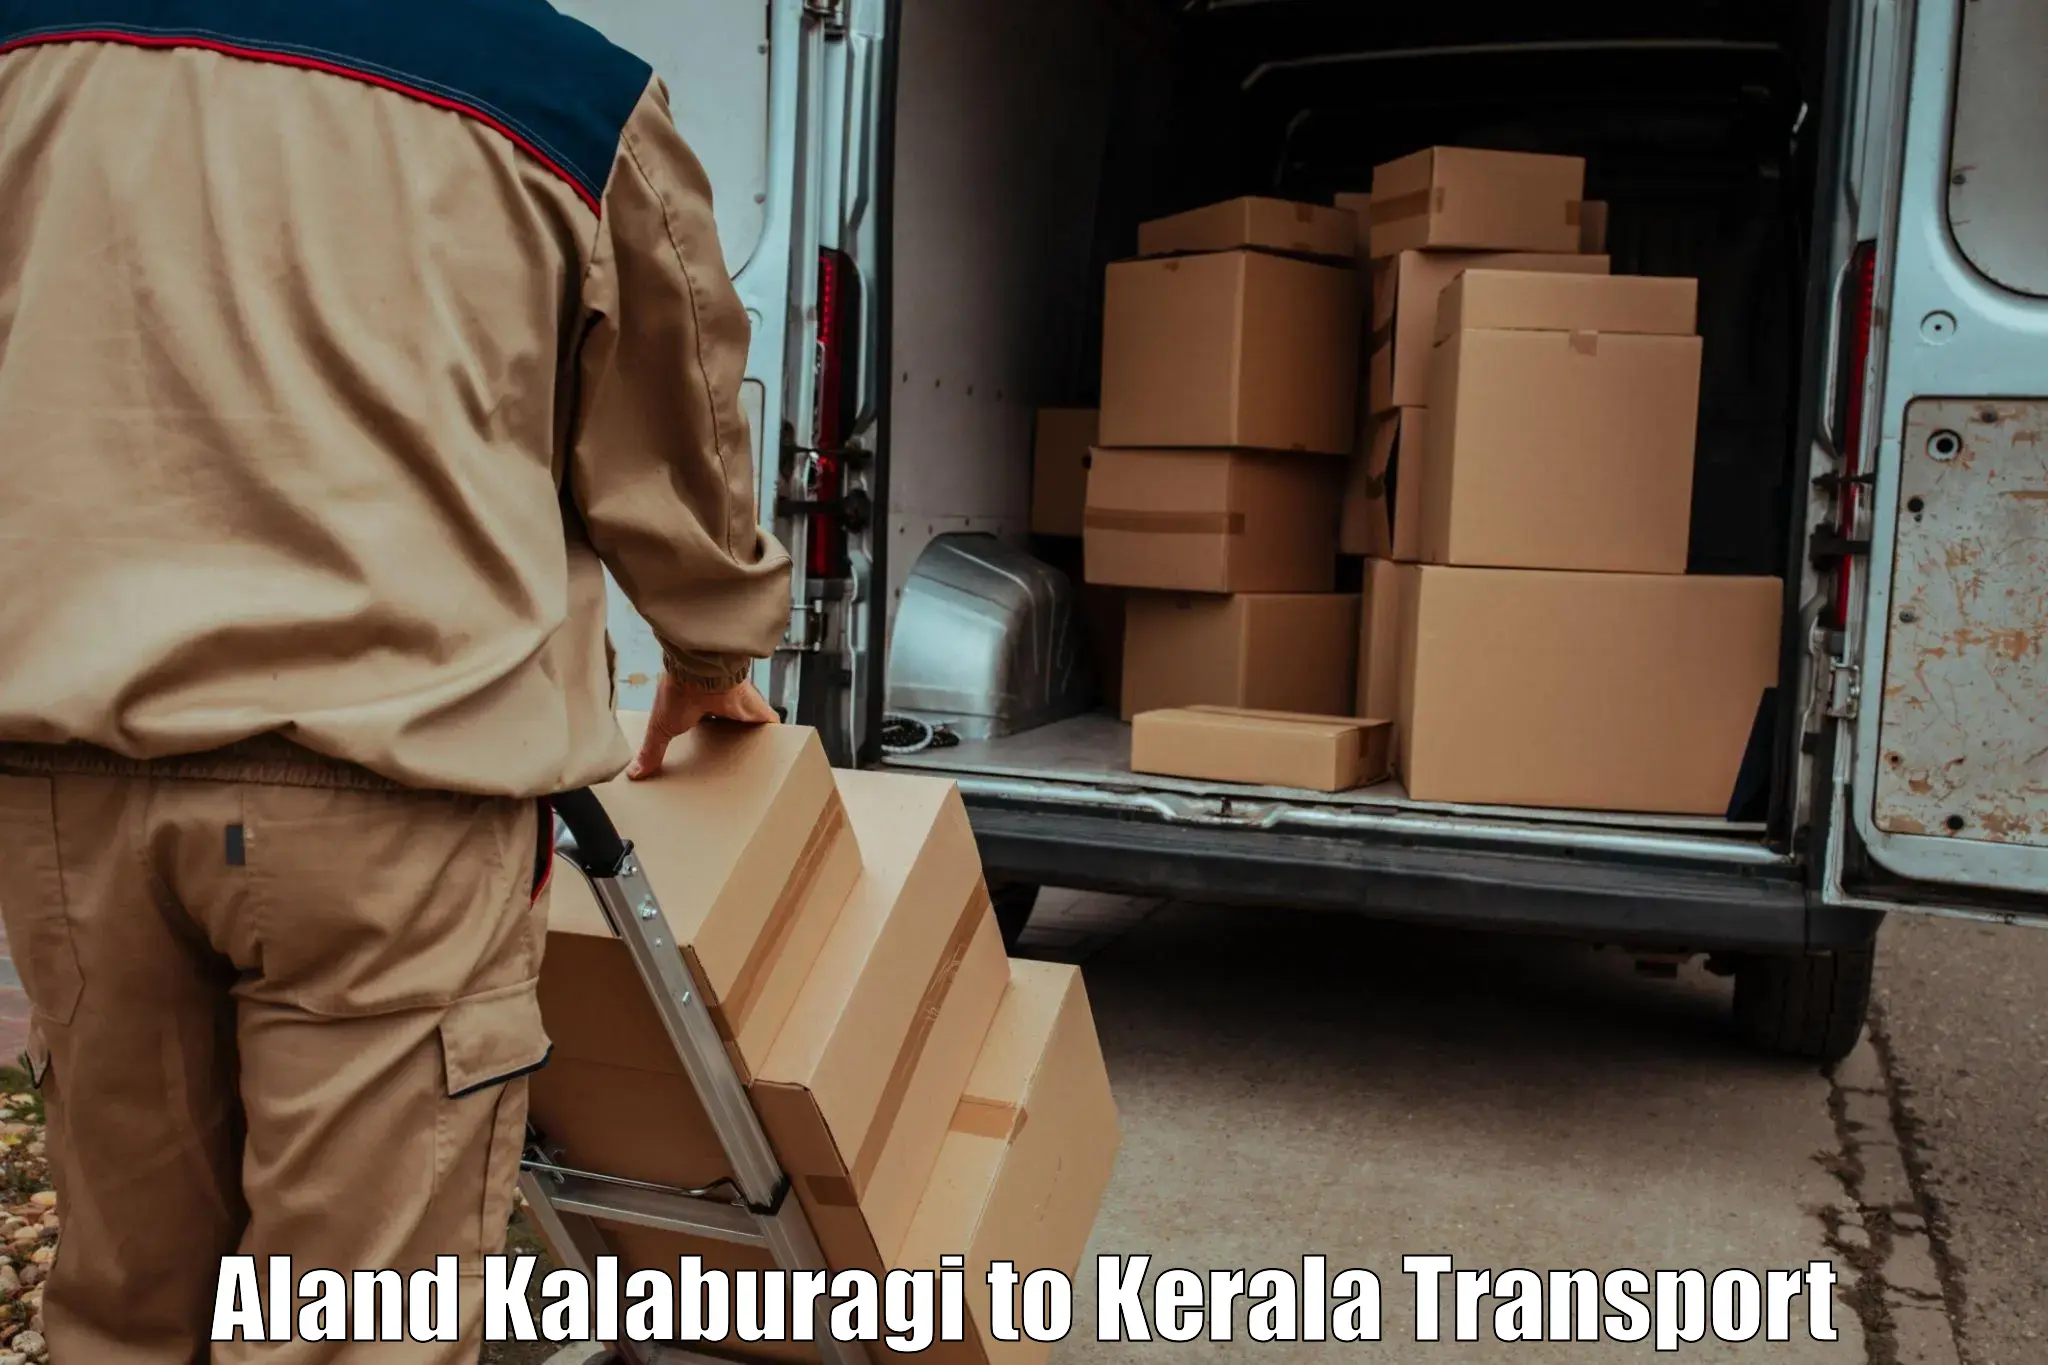 Lorry transport service Aland Kalaburagi to Kollam